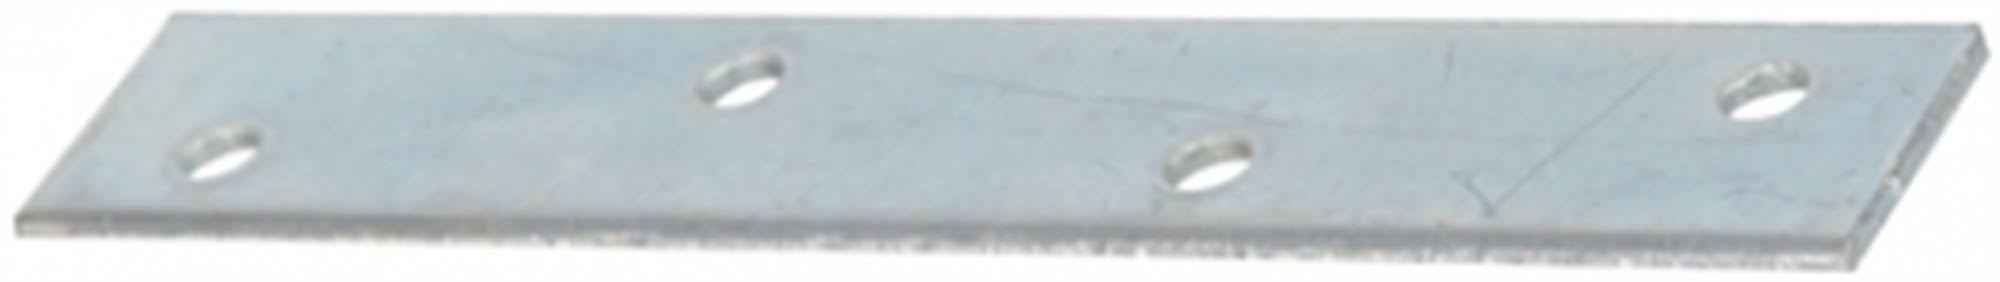 The Hillman Group Mending Plate - 12" x 1 1/8", Zinc Plated, 5pk